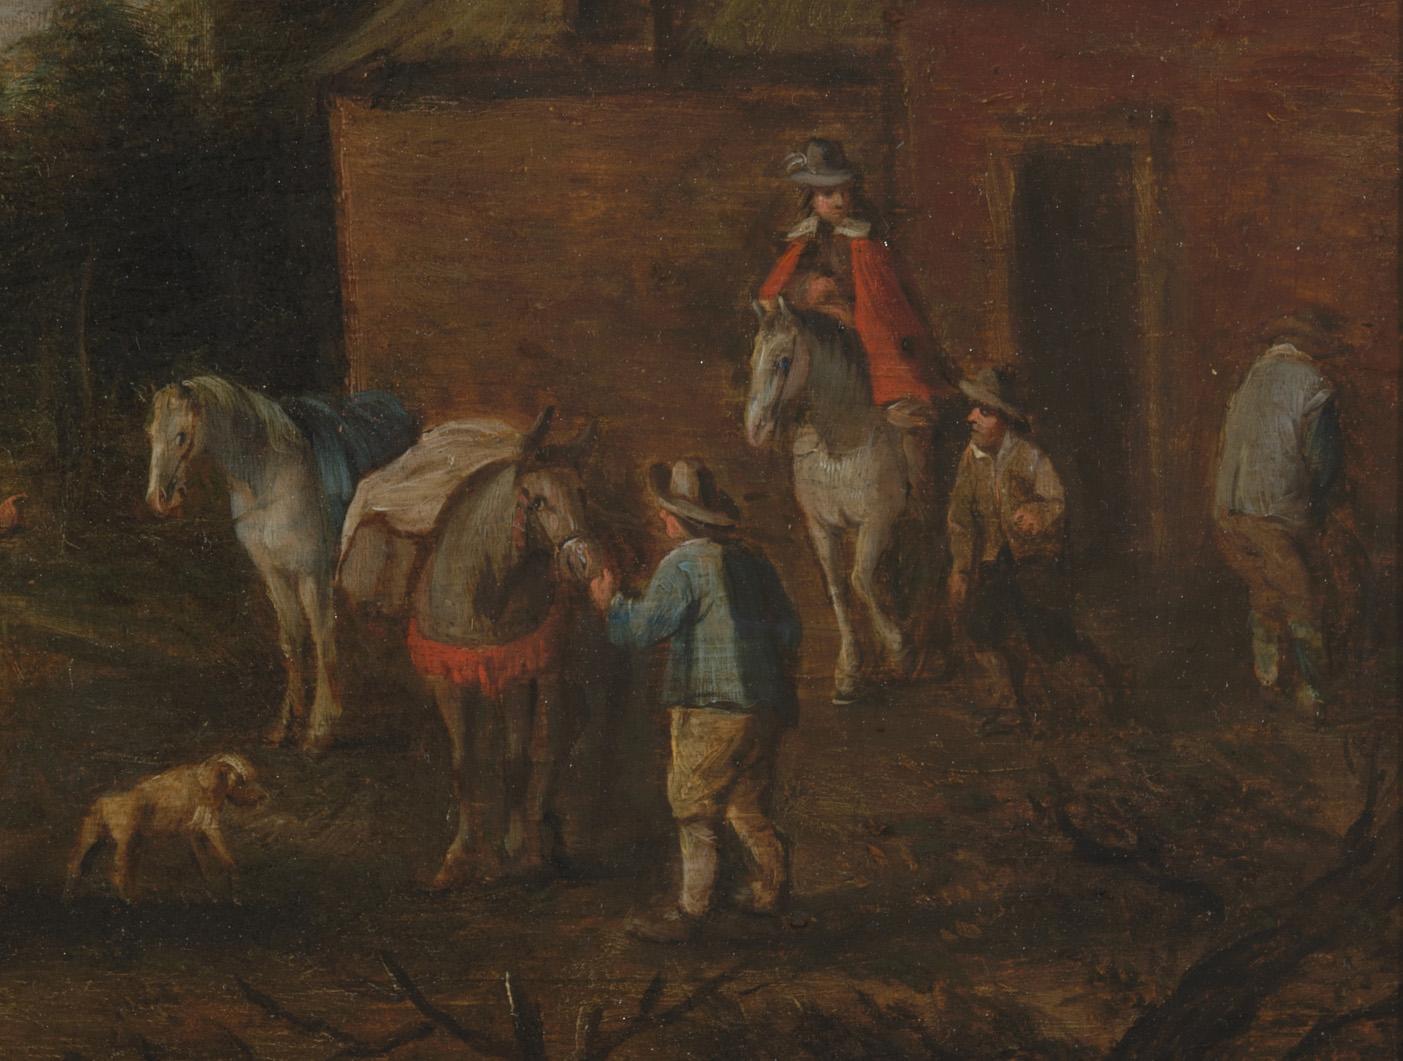 Wie der niederländische Maler Philips Wouwerman malte auch dieser Künstler Reisende, die in einem Gasthaus oder auf einem Bauernhof Halt machten. Einer der Männer stieg von seinem Pferd ab und urinierte gegen die Fassade des Gebäudes. Das Motiv des